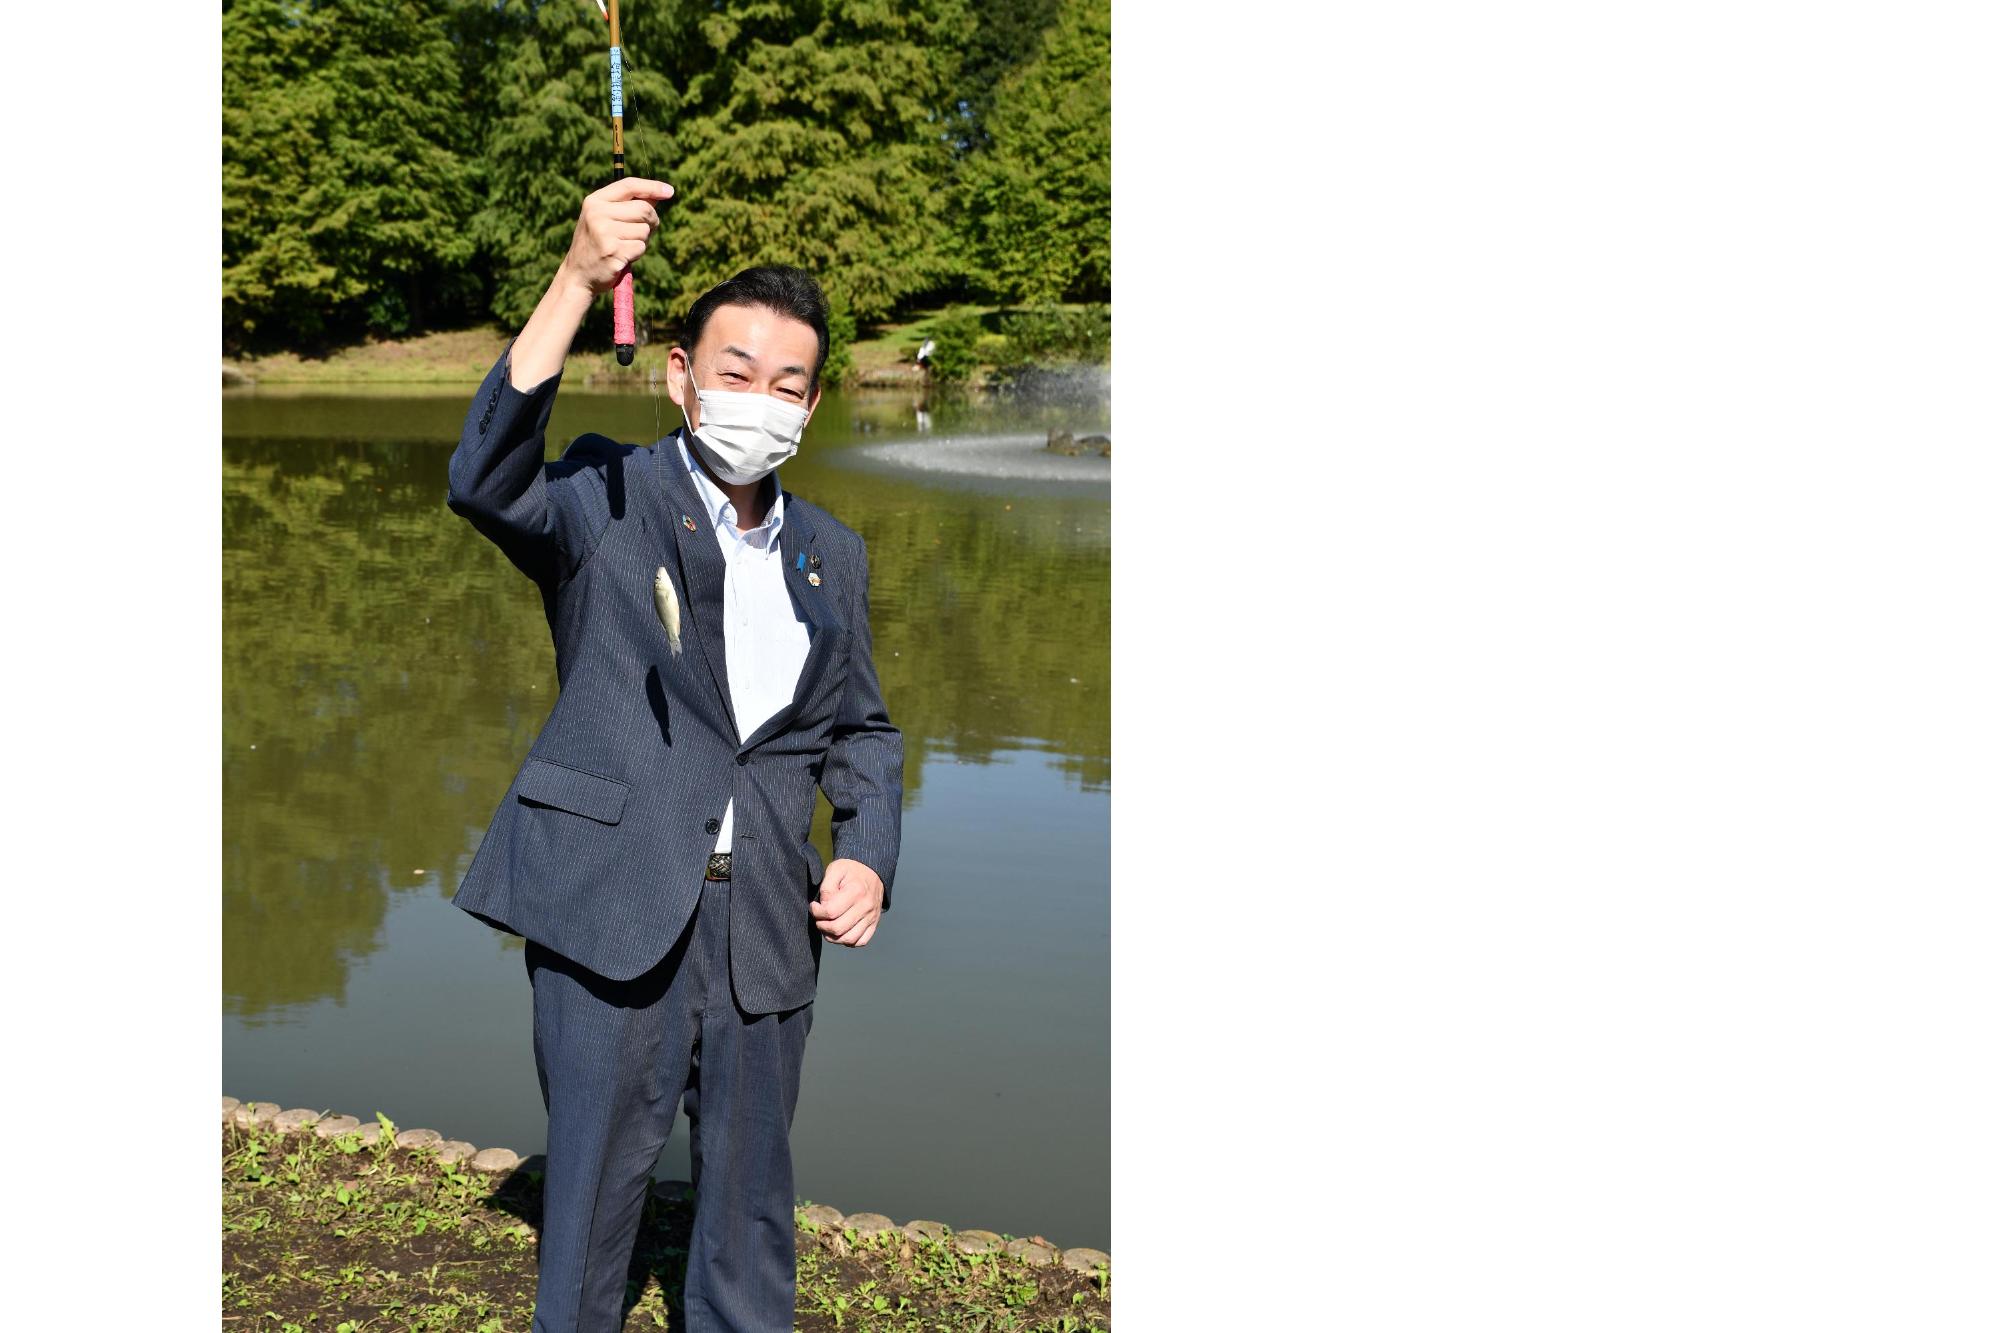 第4回初めての魚釣り体験の画像。第3回大会（令和3年）で、10センチのフナを釣り上げた小野桶川市長の様子が写っている。